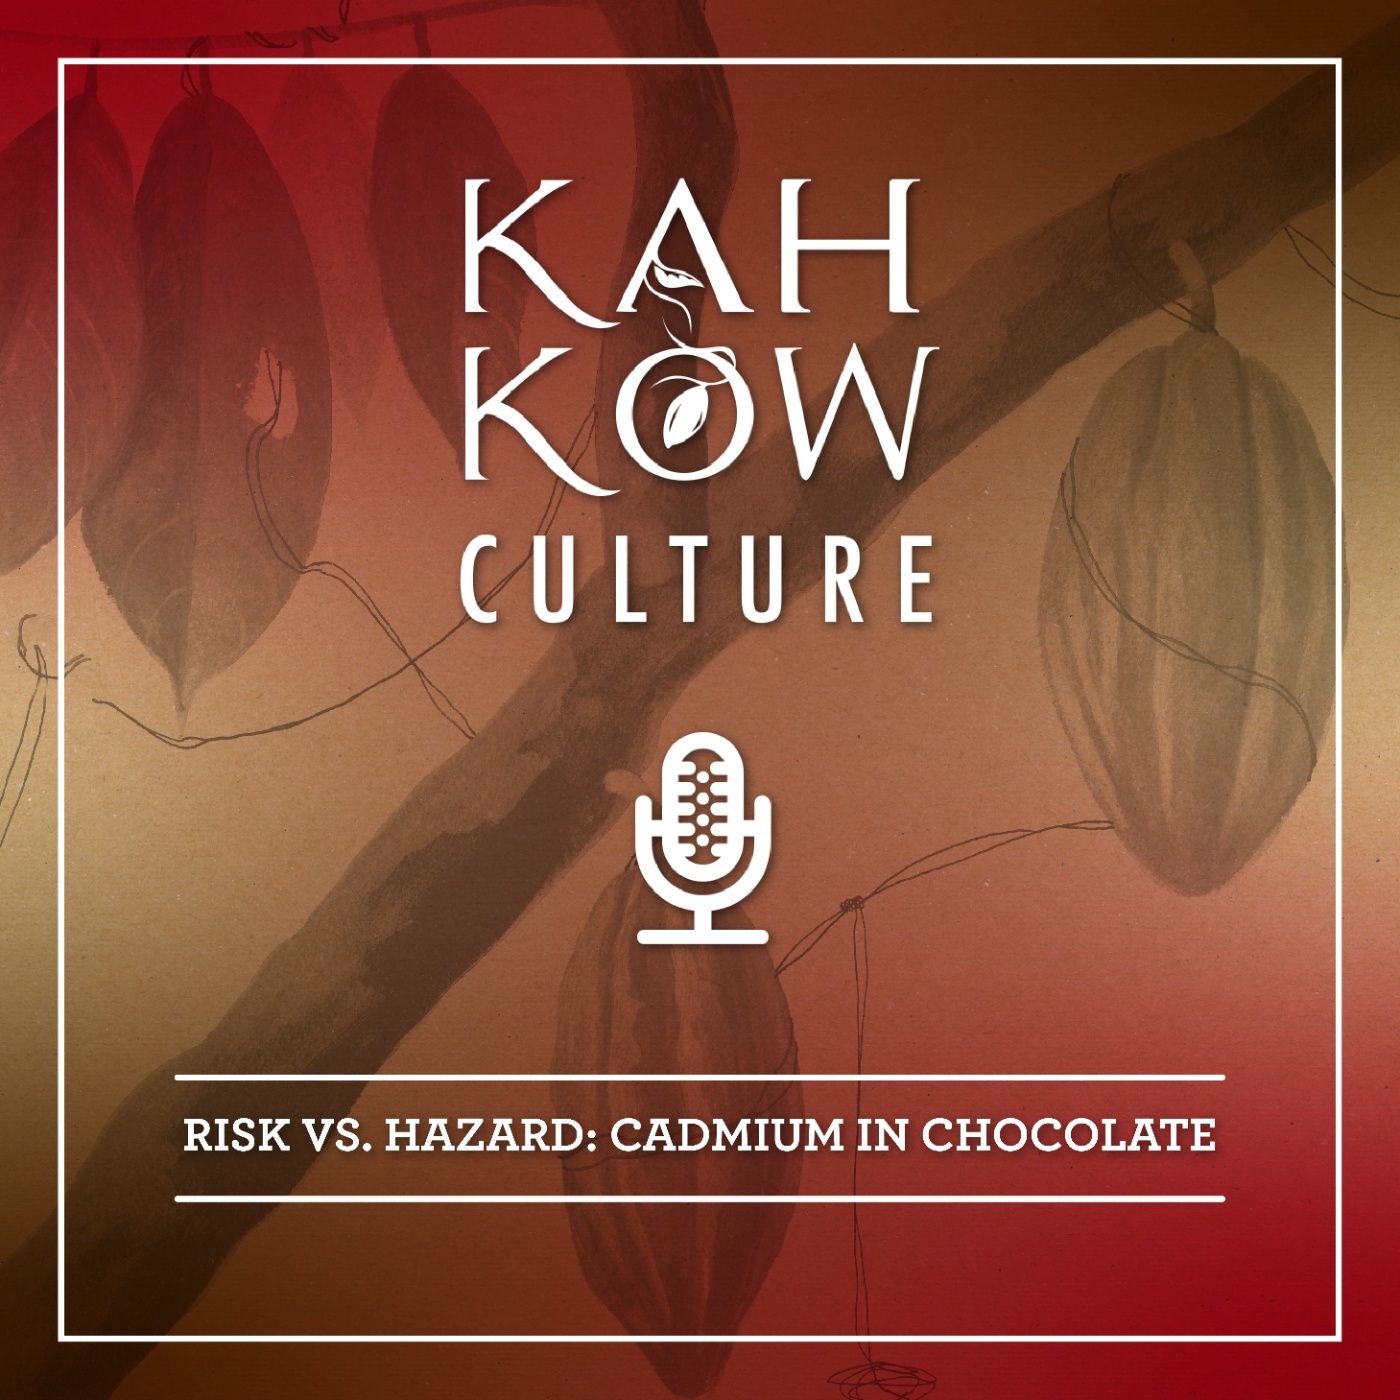 Risk vs. Hazard, cadmium in chocolate